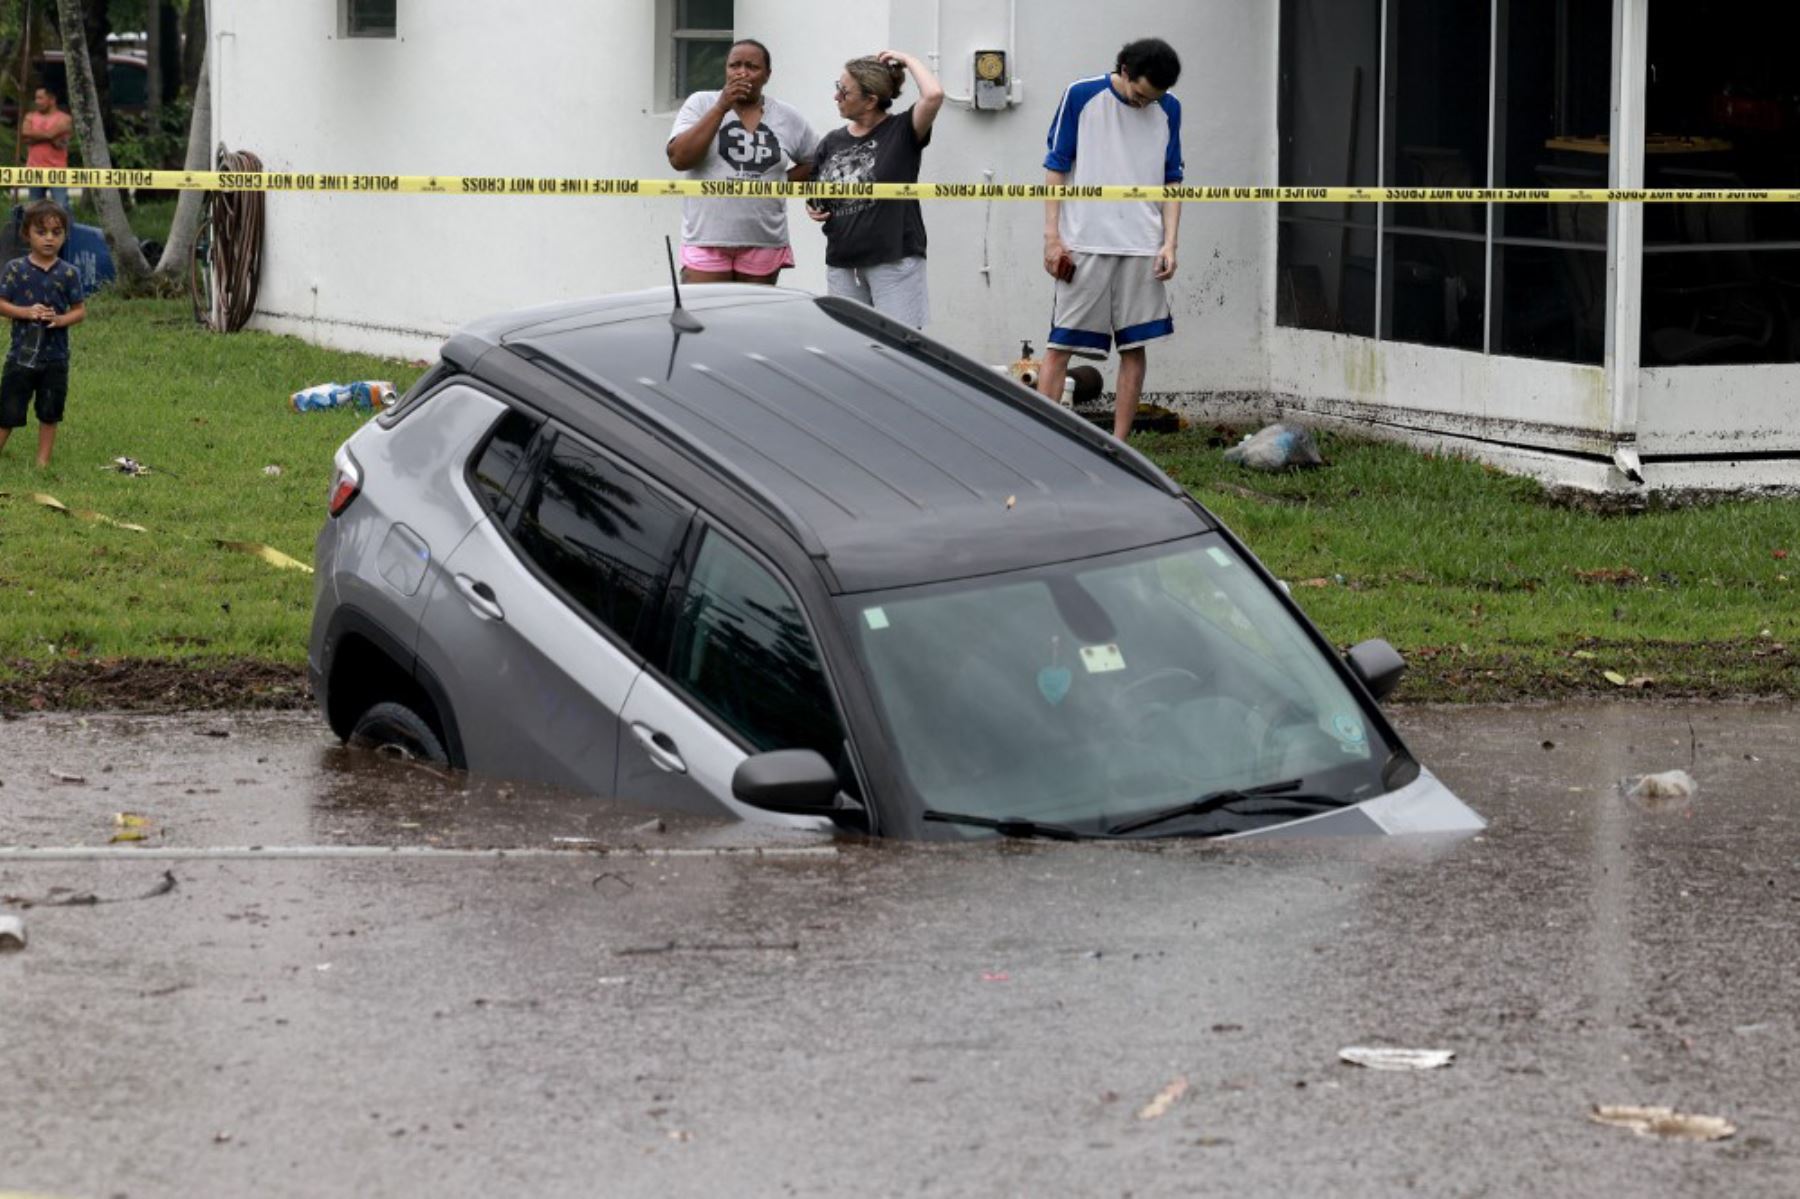 Las precipitaciones dejaron más de 635 mm de agua en 24 horas en esa ciudad de 180 000 habitantes al norte de Miami, según un informe preliminar del servicio meteorológico. Foto: AFP